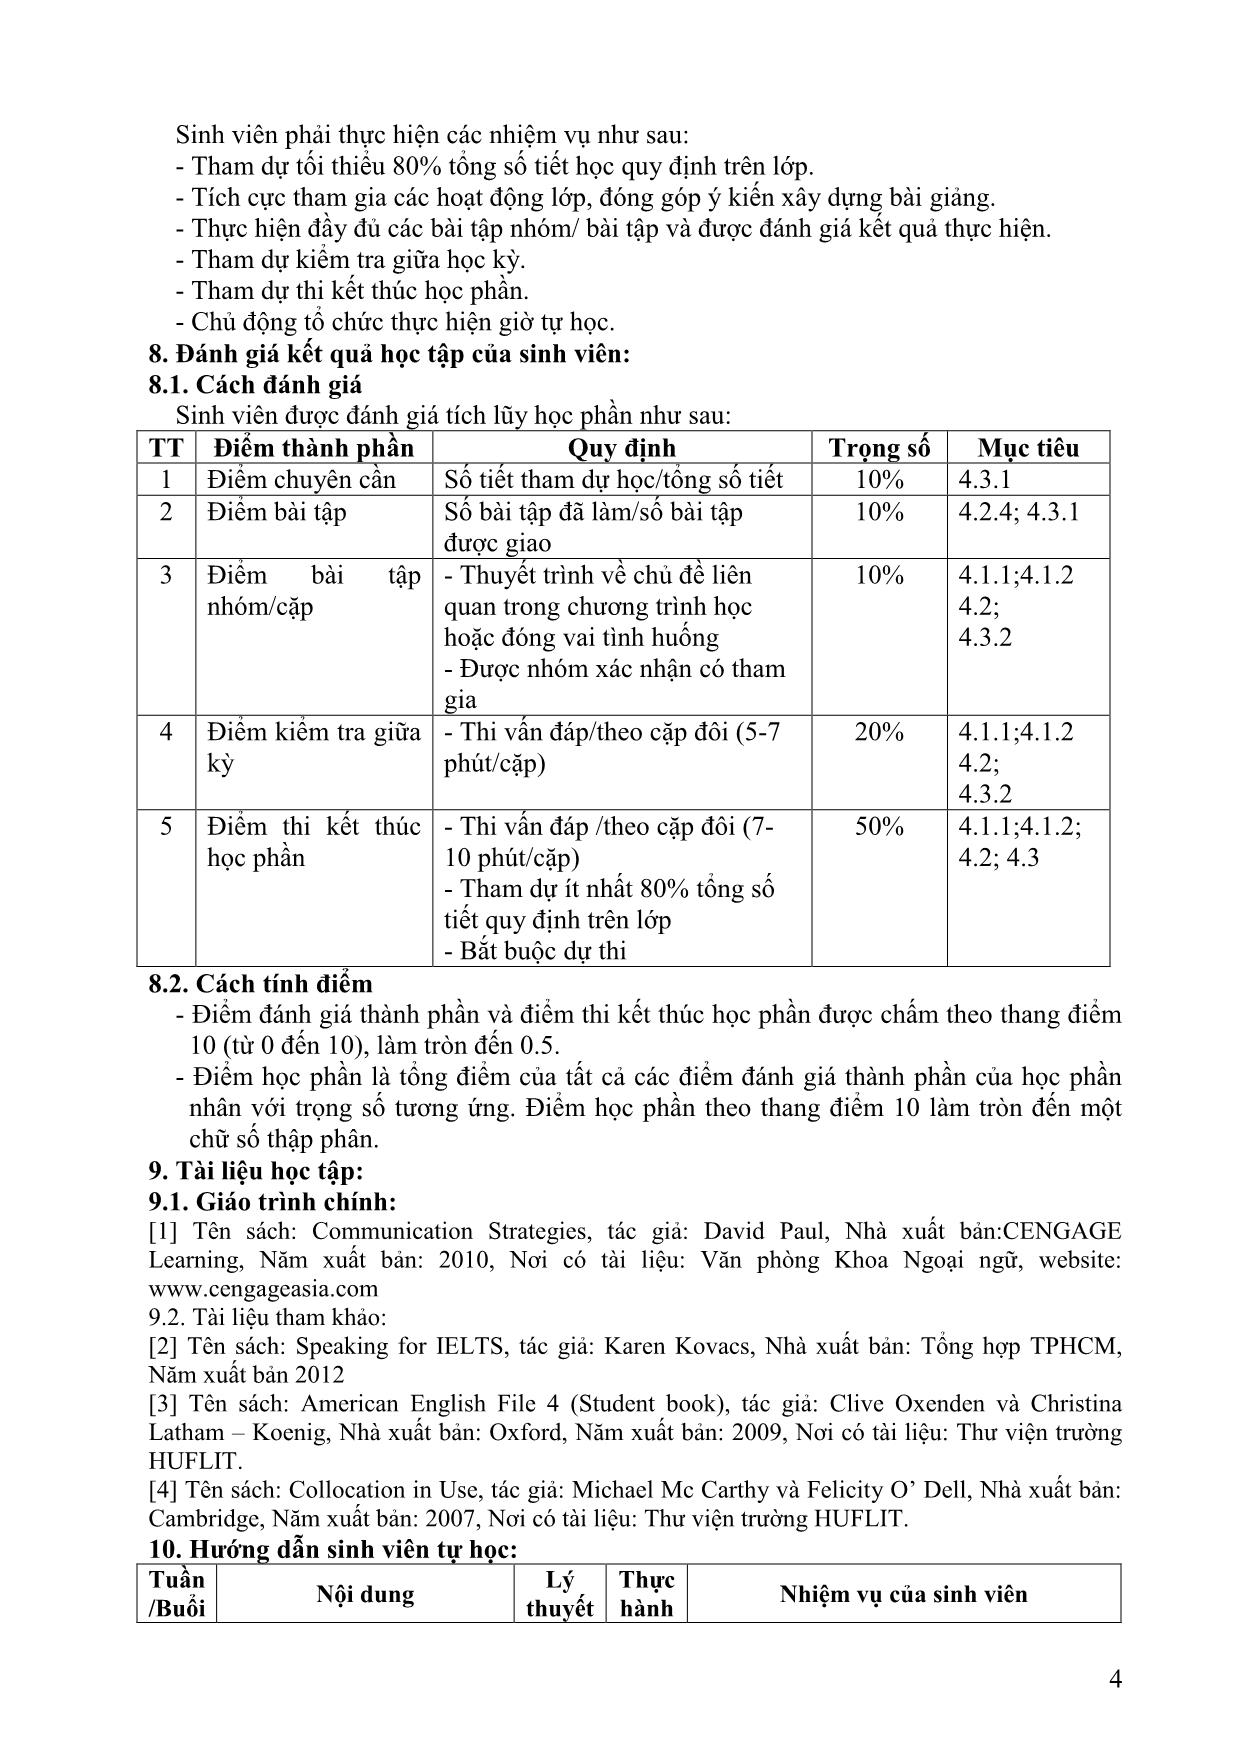 Đề cương chi tiết học phần Nói tiếng Anh 2 (Speaking 2) trang 4